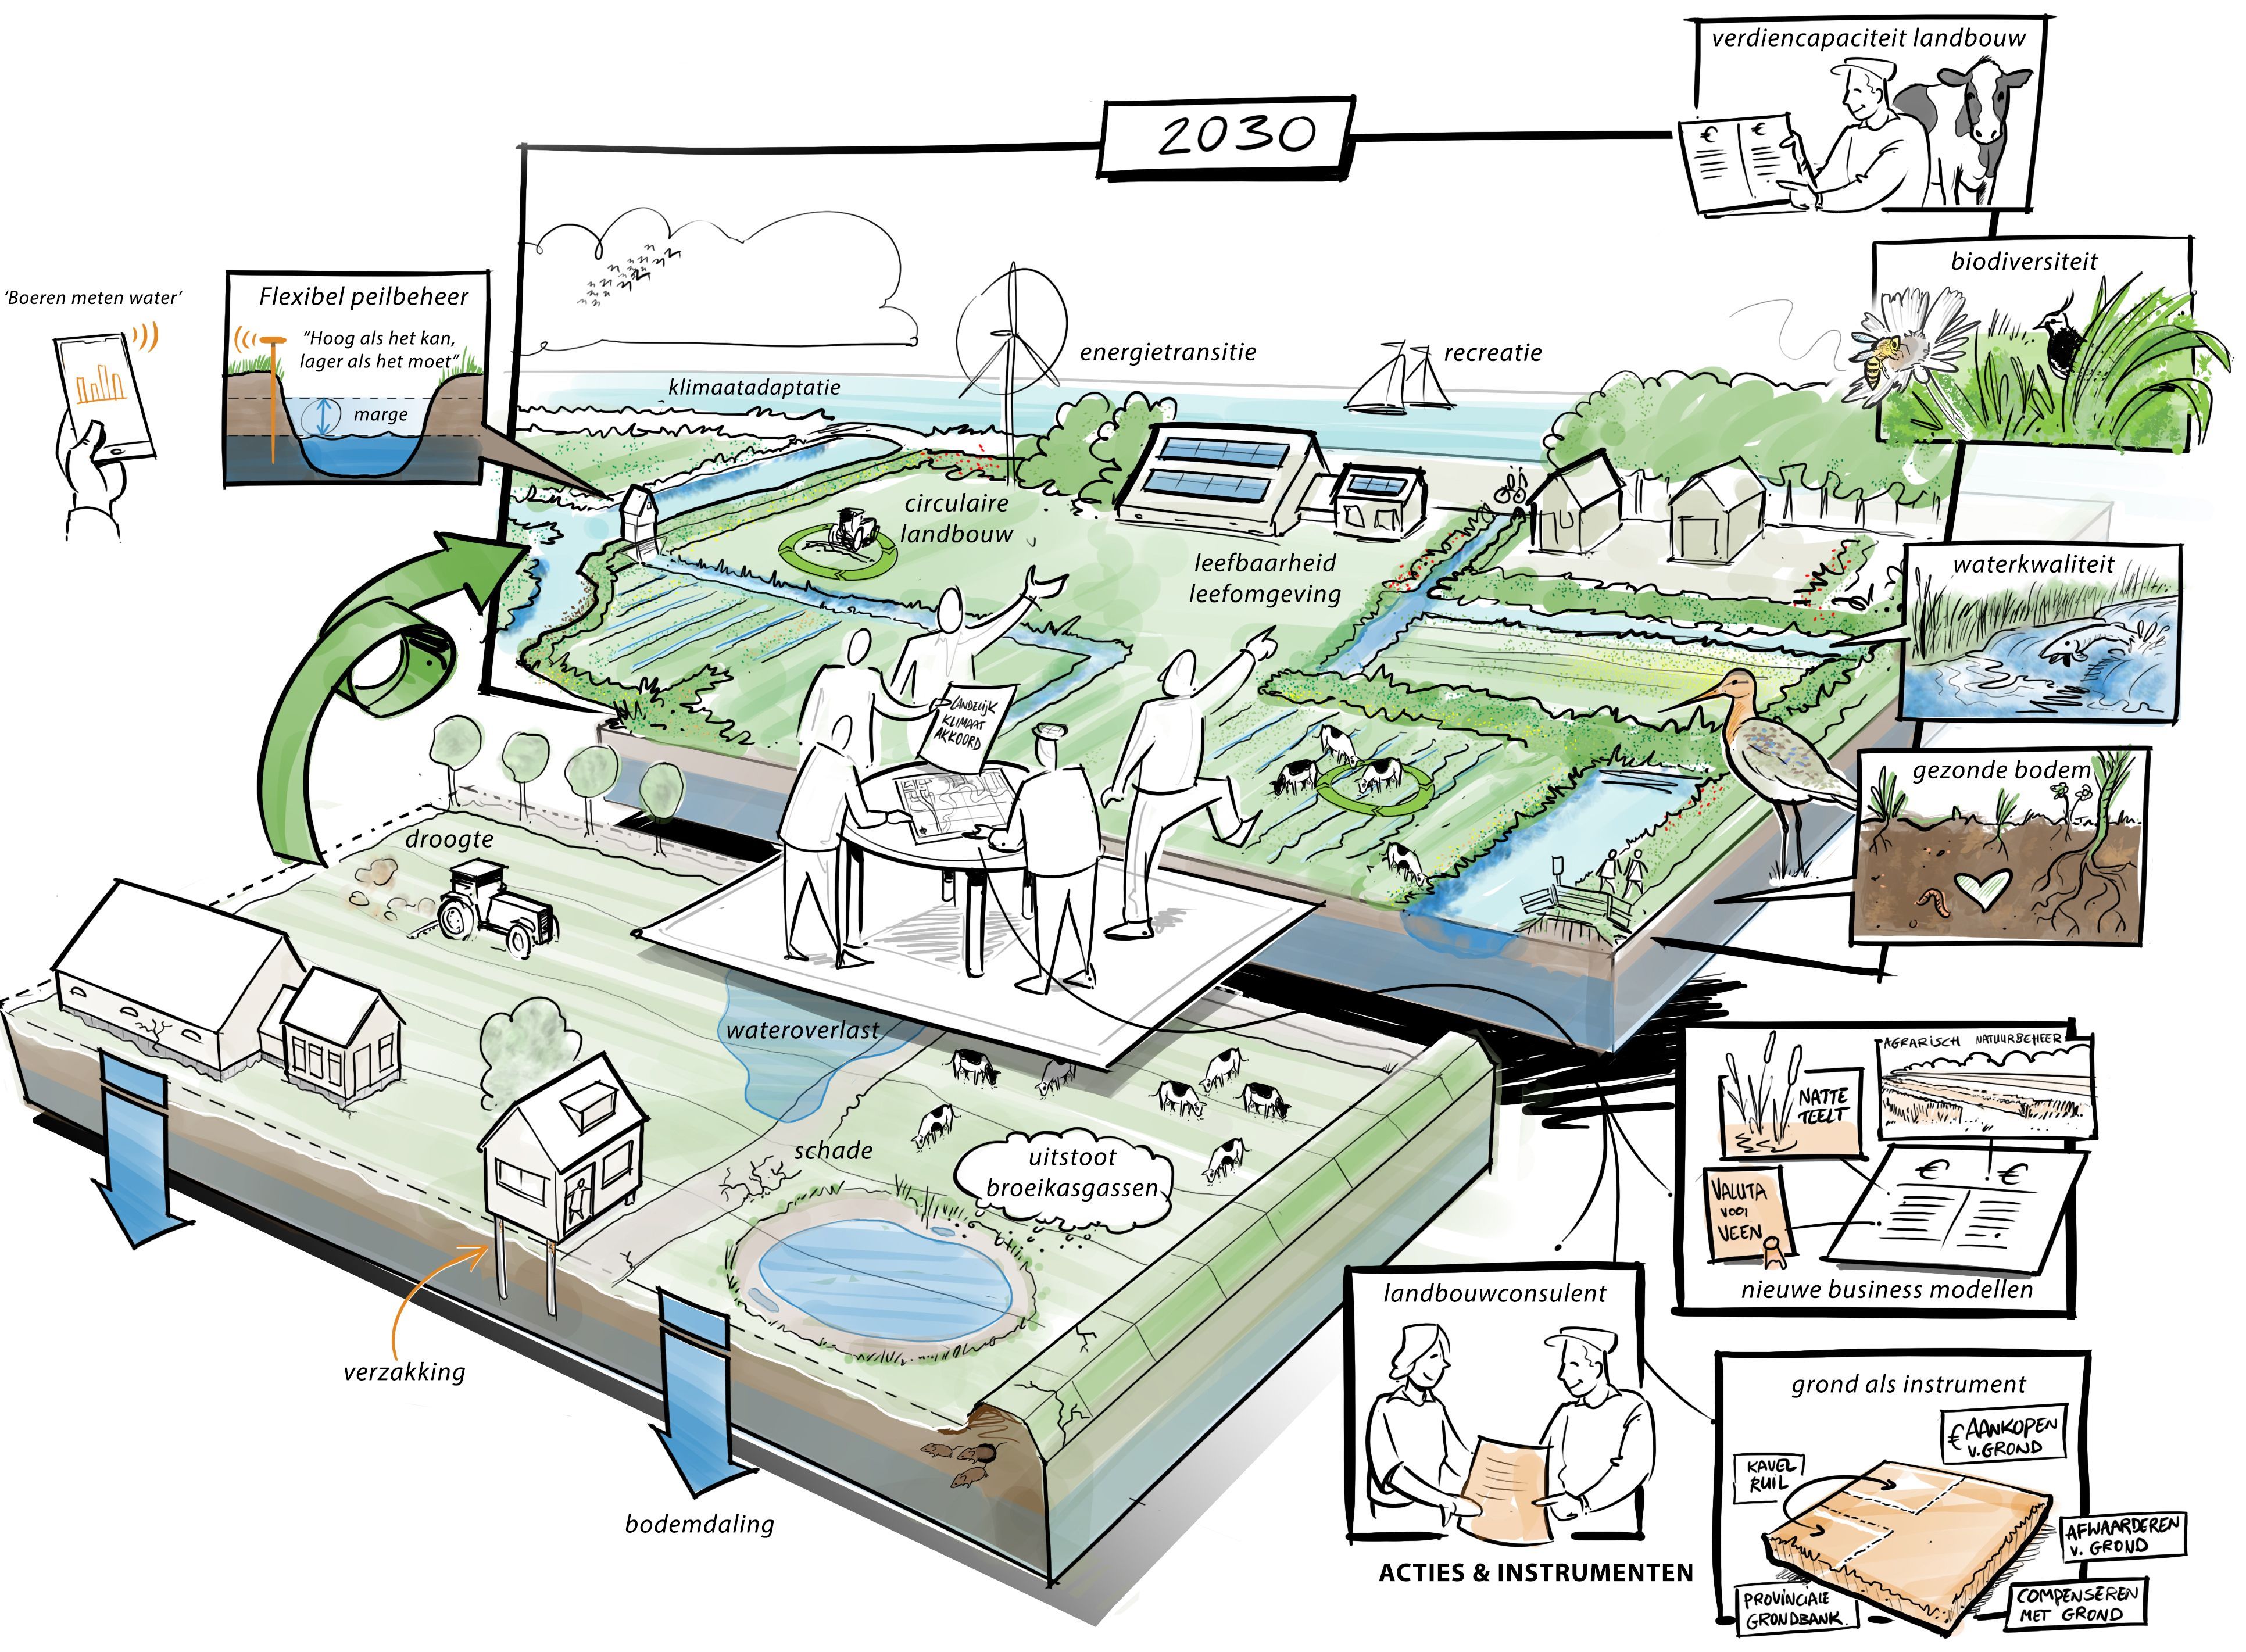 Een zogenaamde 'praatplaat', waarin de doelen en uitdagingen tot 2030 in stripvorm zijn getekend. Denk hierbij een illustratie over energietransitie, circulairelandbow, klimaatadaptatie, waterkwaliteit,biodiversiteit en verdiencapaciteit landbouw